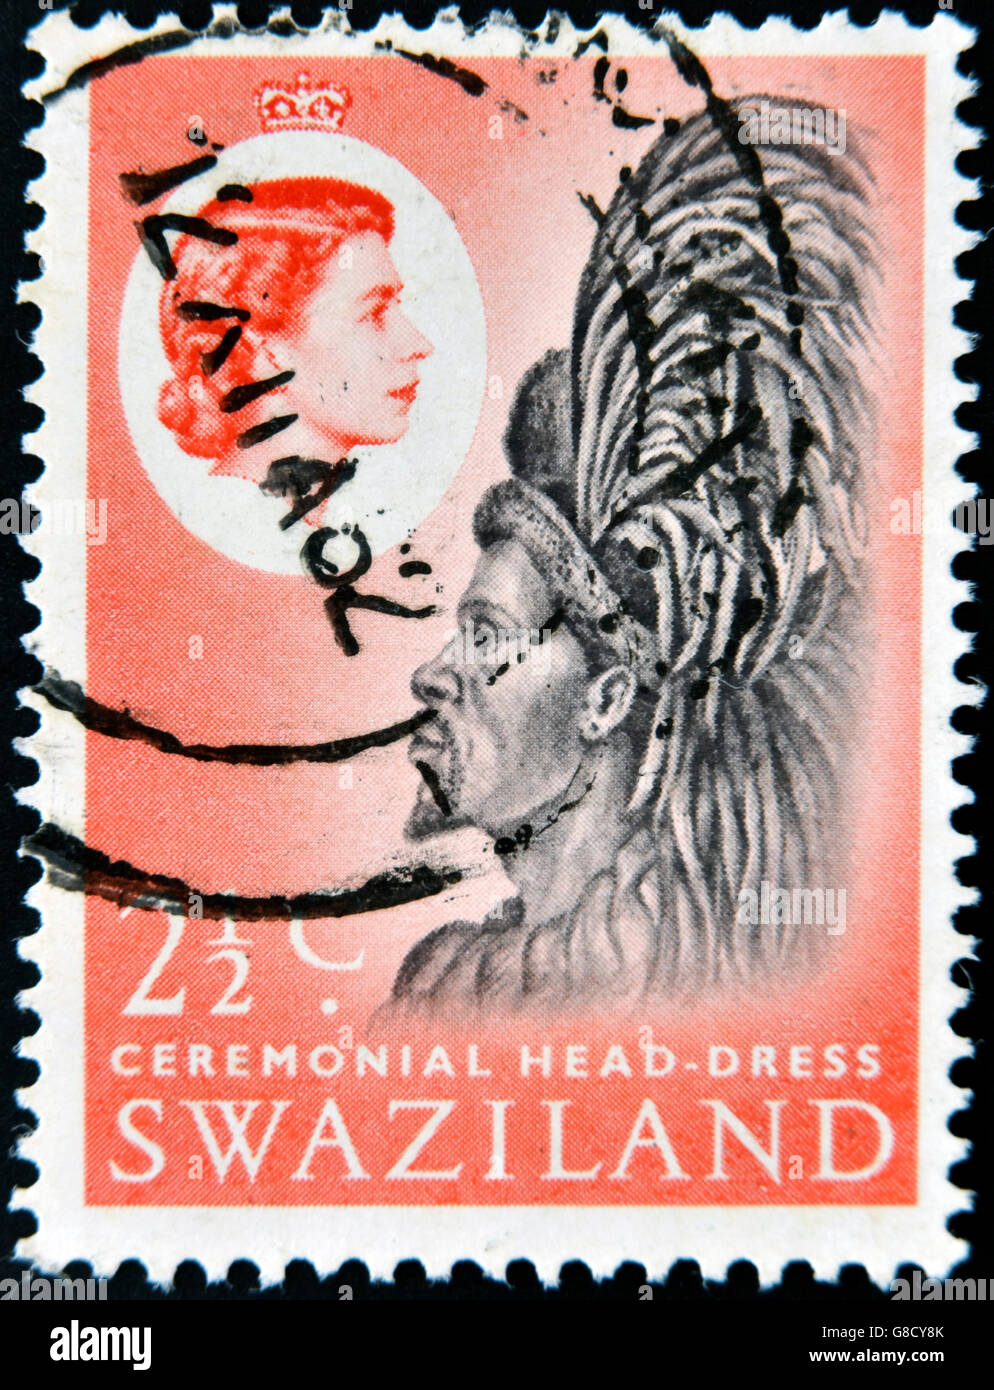 SWAZILAND - circa 1975 : timbre imprimé en Swaziland dédié au couvre-chef de cérémonie, vers 1975 Banque D'Images